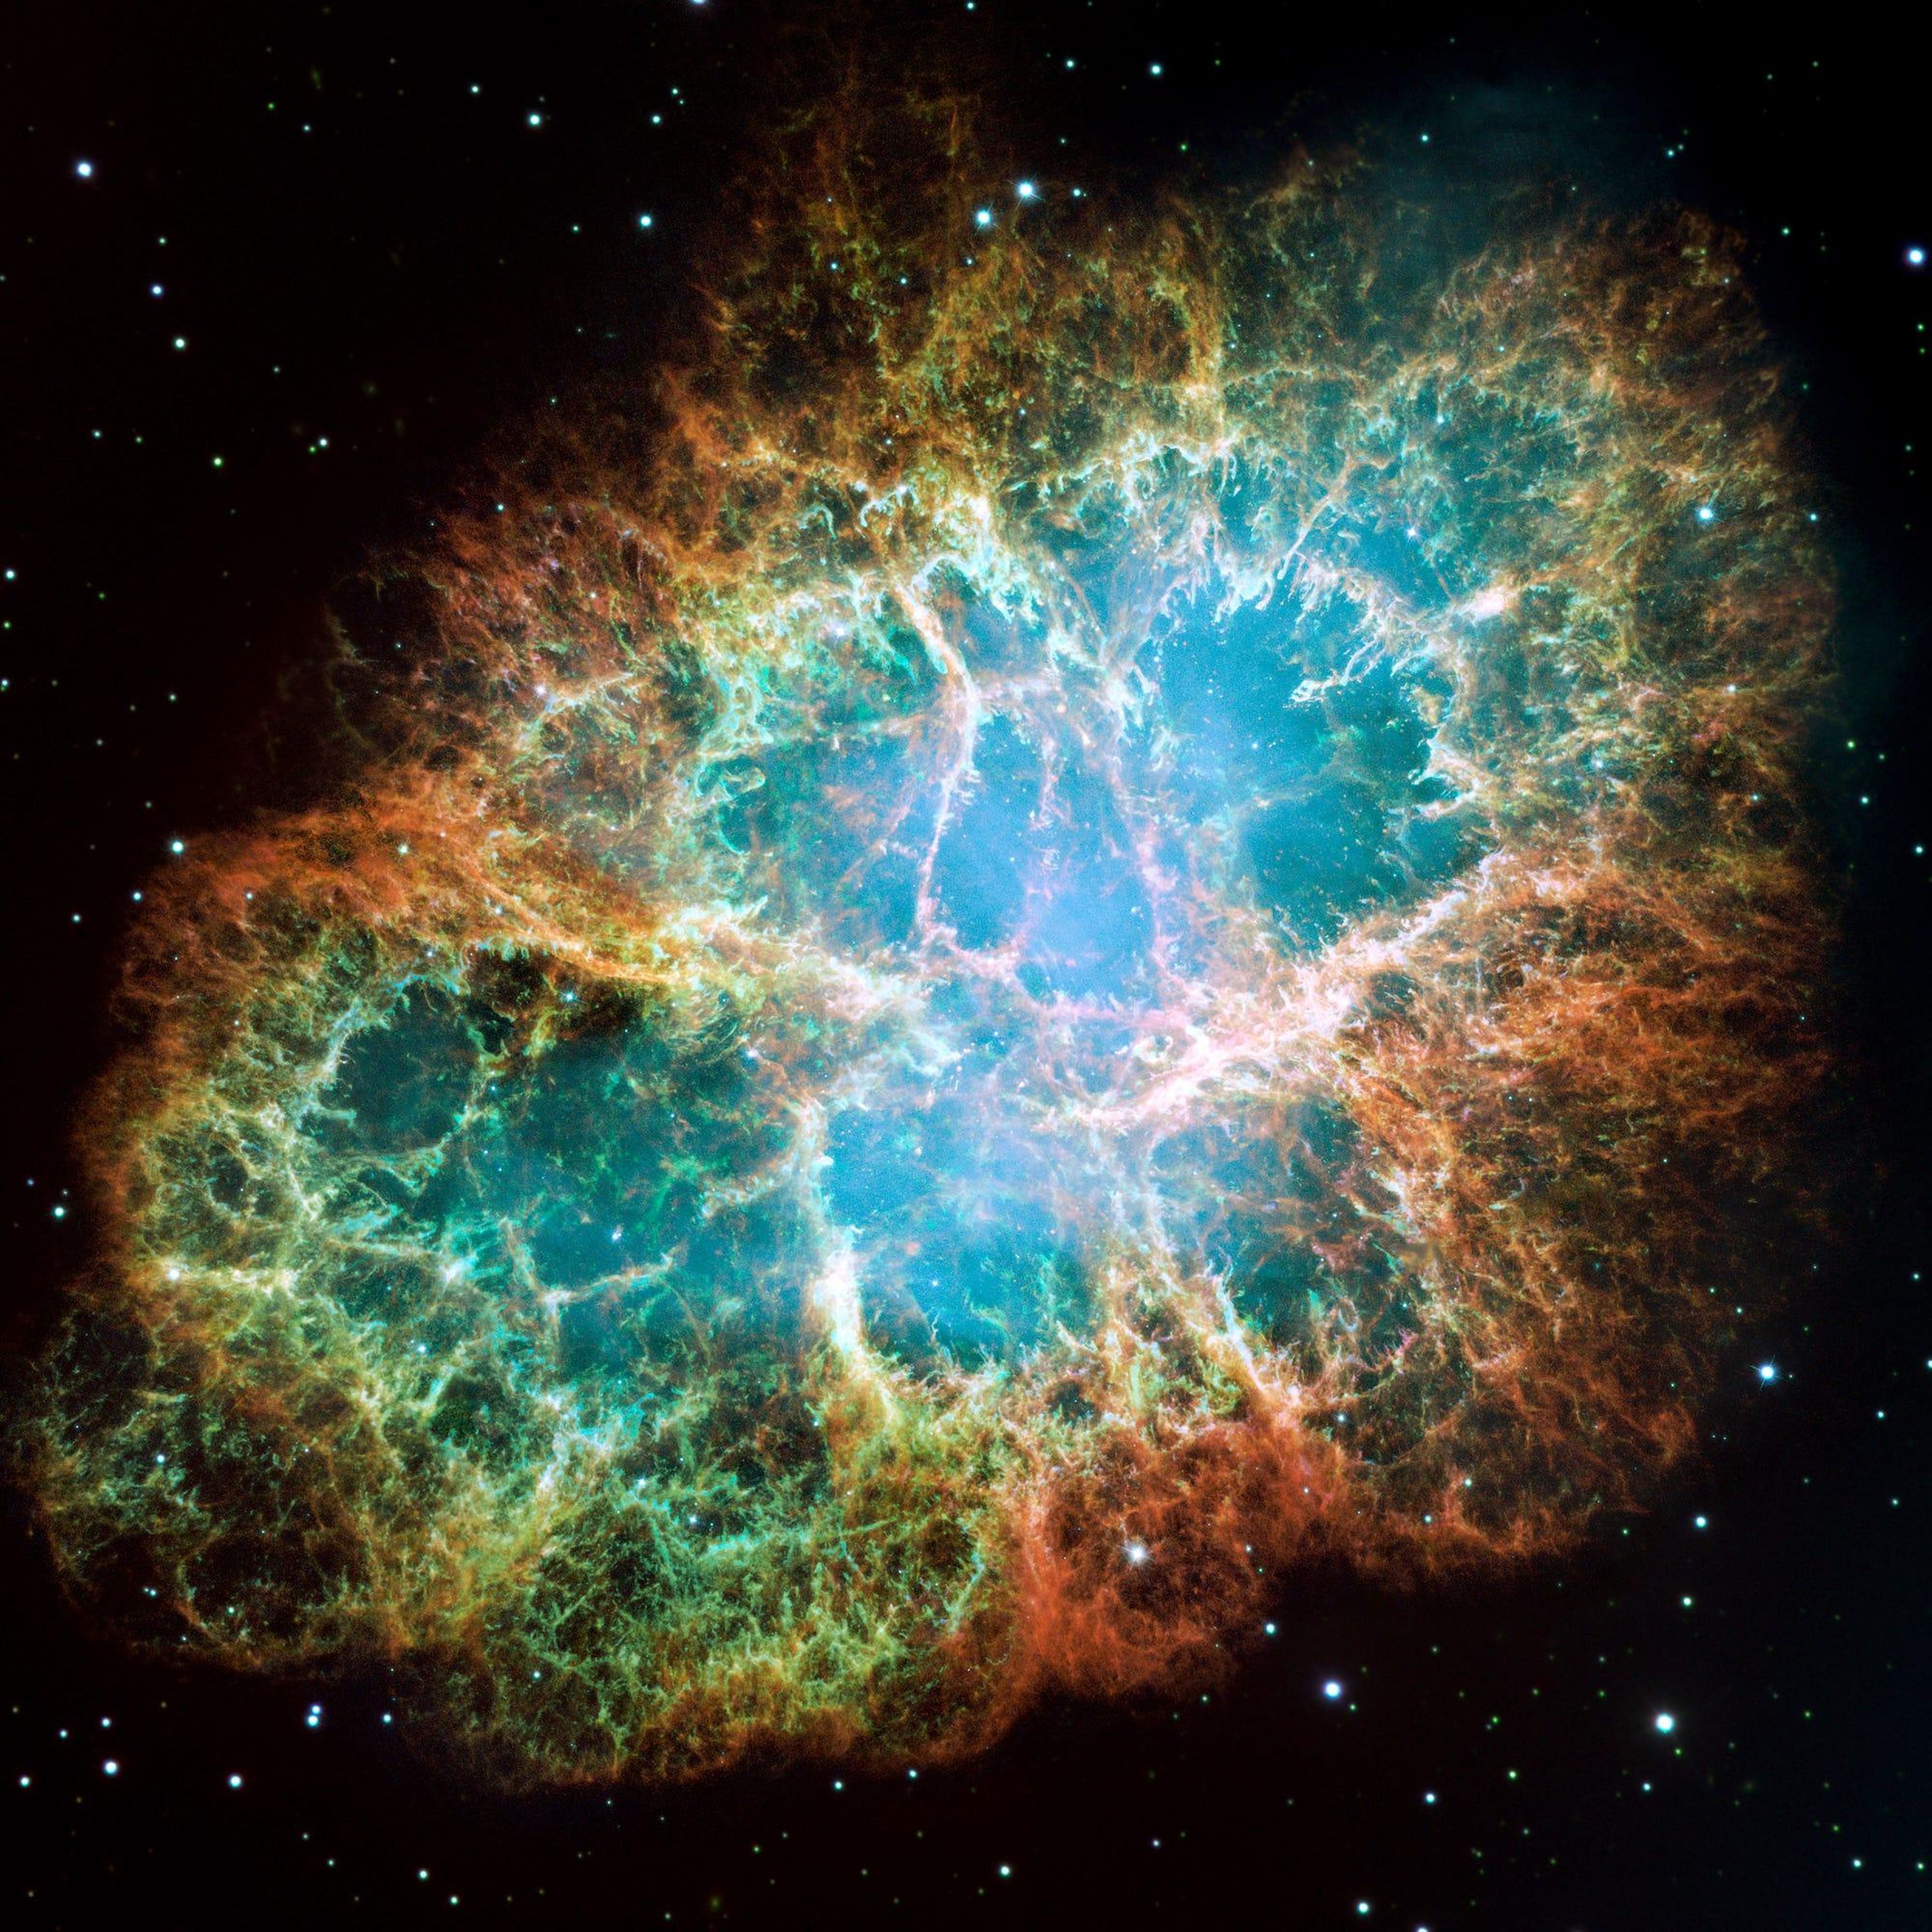 La Nebulosa del Cangrejo, un remanente de seis años luz de ancho de la explosión de una supernova de una estrella, según la imagen del Hubble.